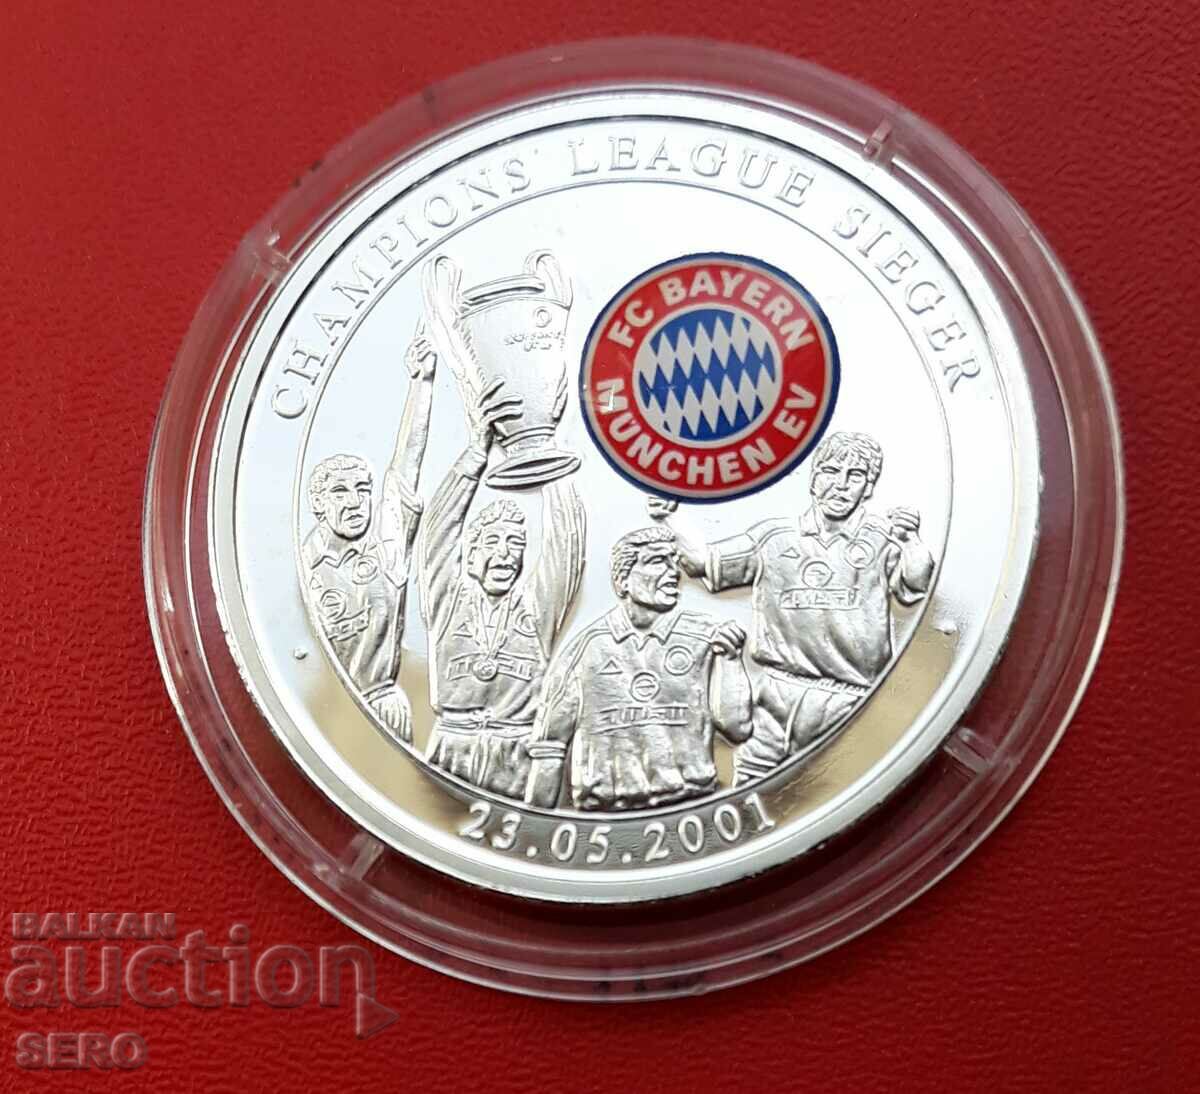 Germania-FC Bayern Munchen-Medalia Ligii Campionilor 2001